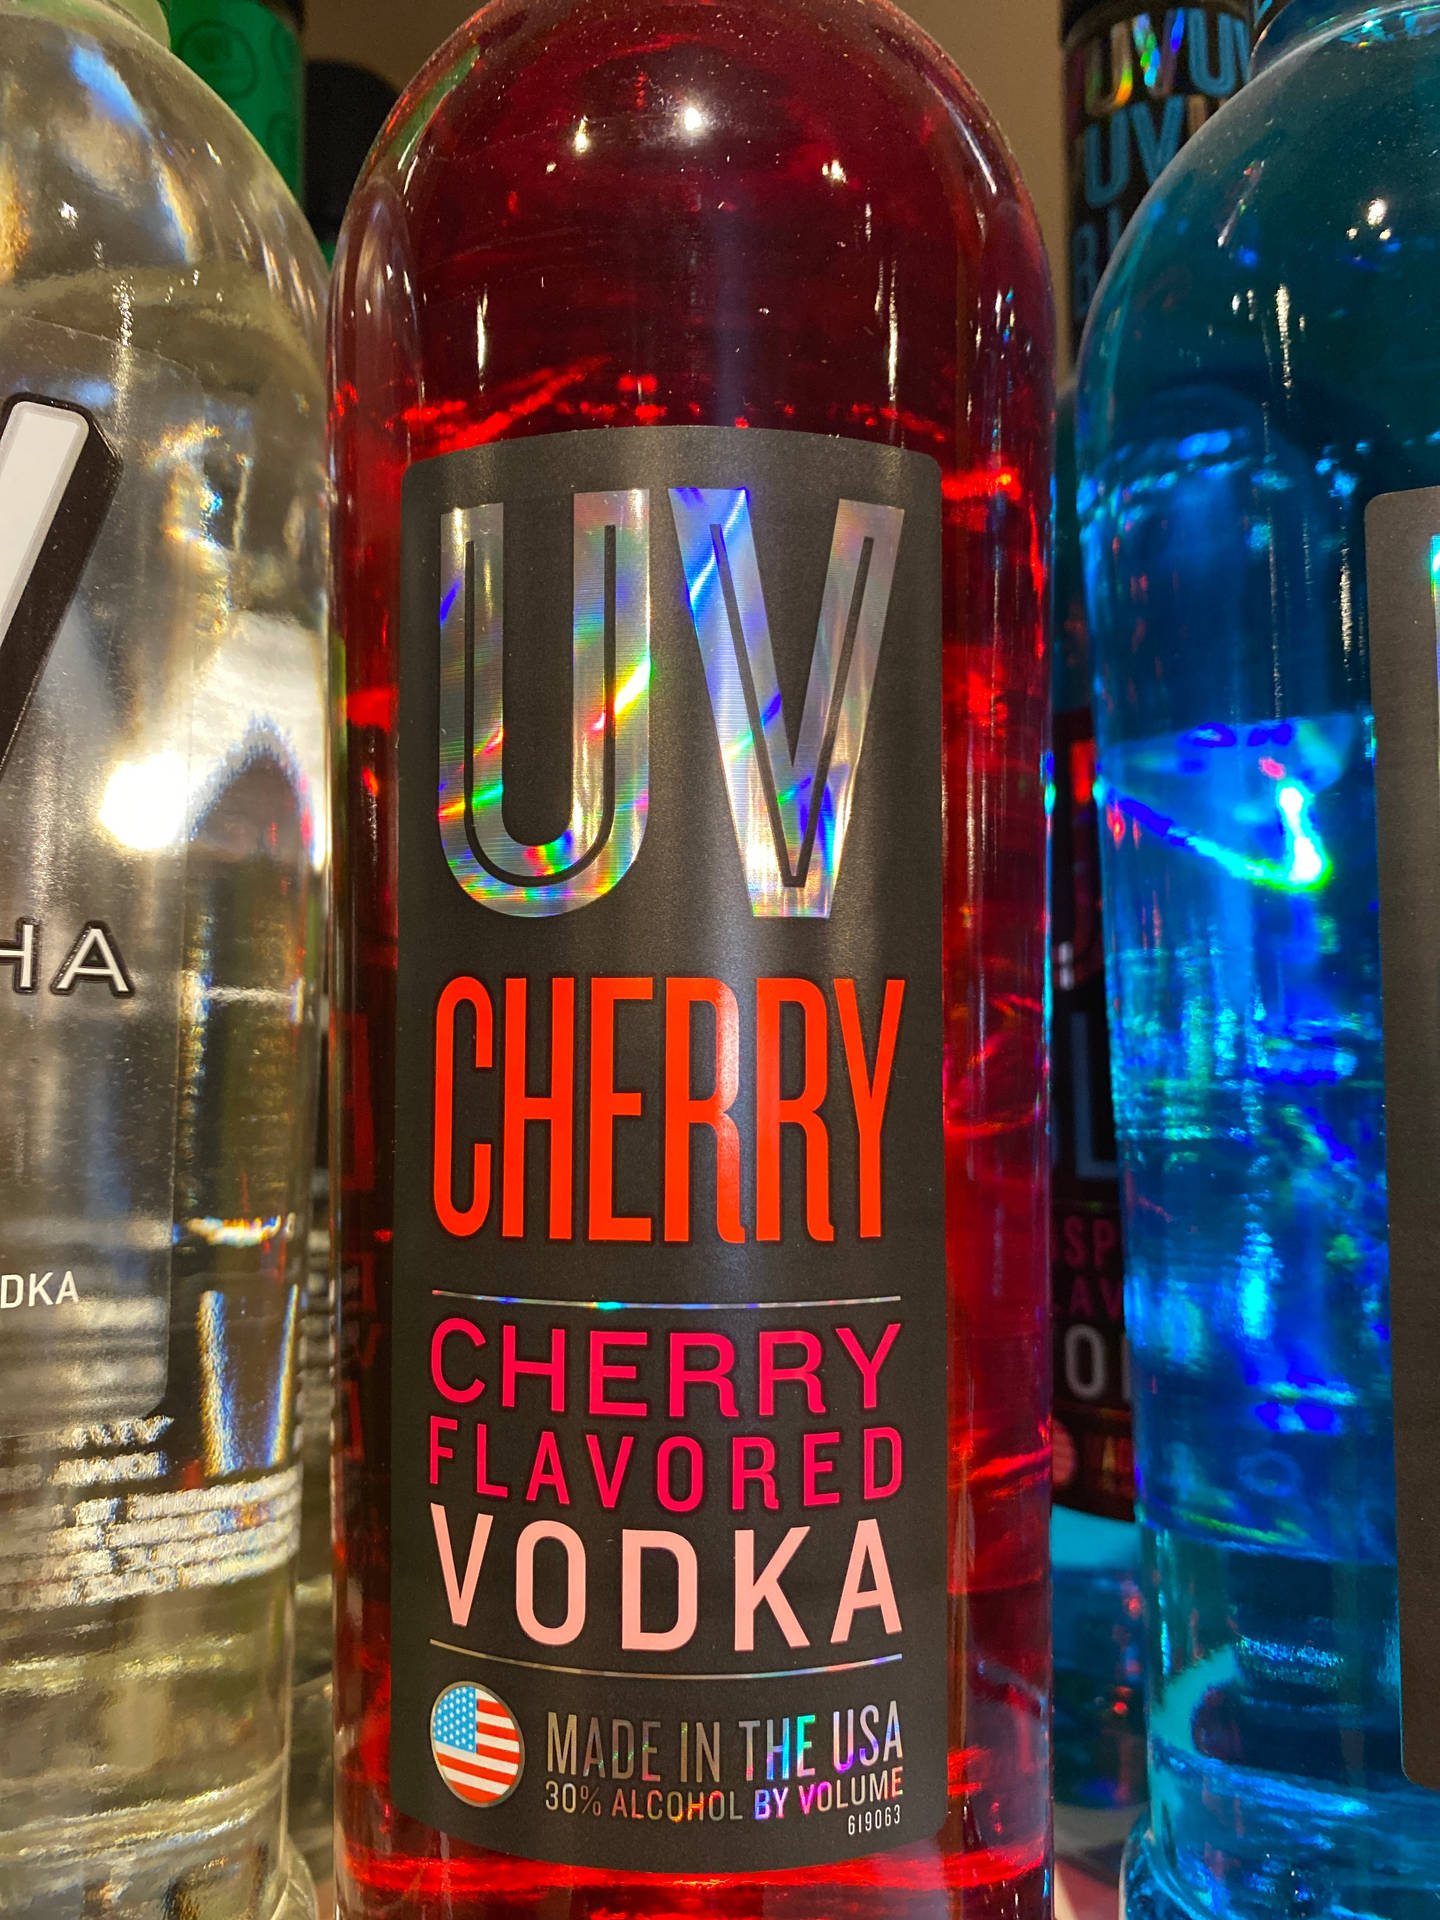 Uv Vodka Cherry Flavored Wallpaper